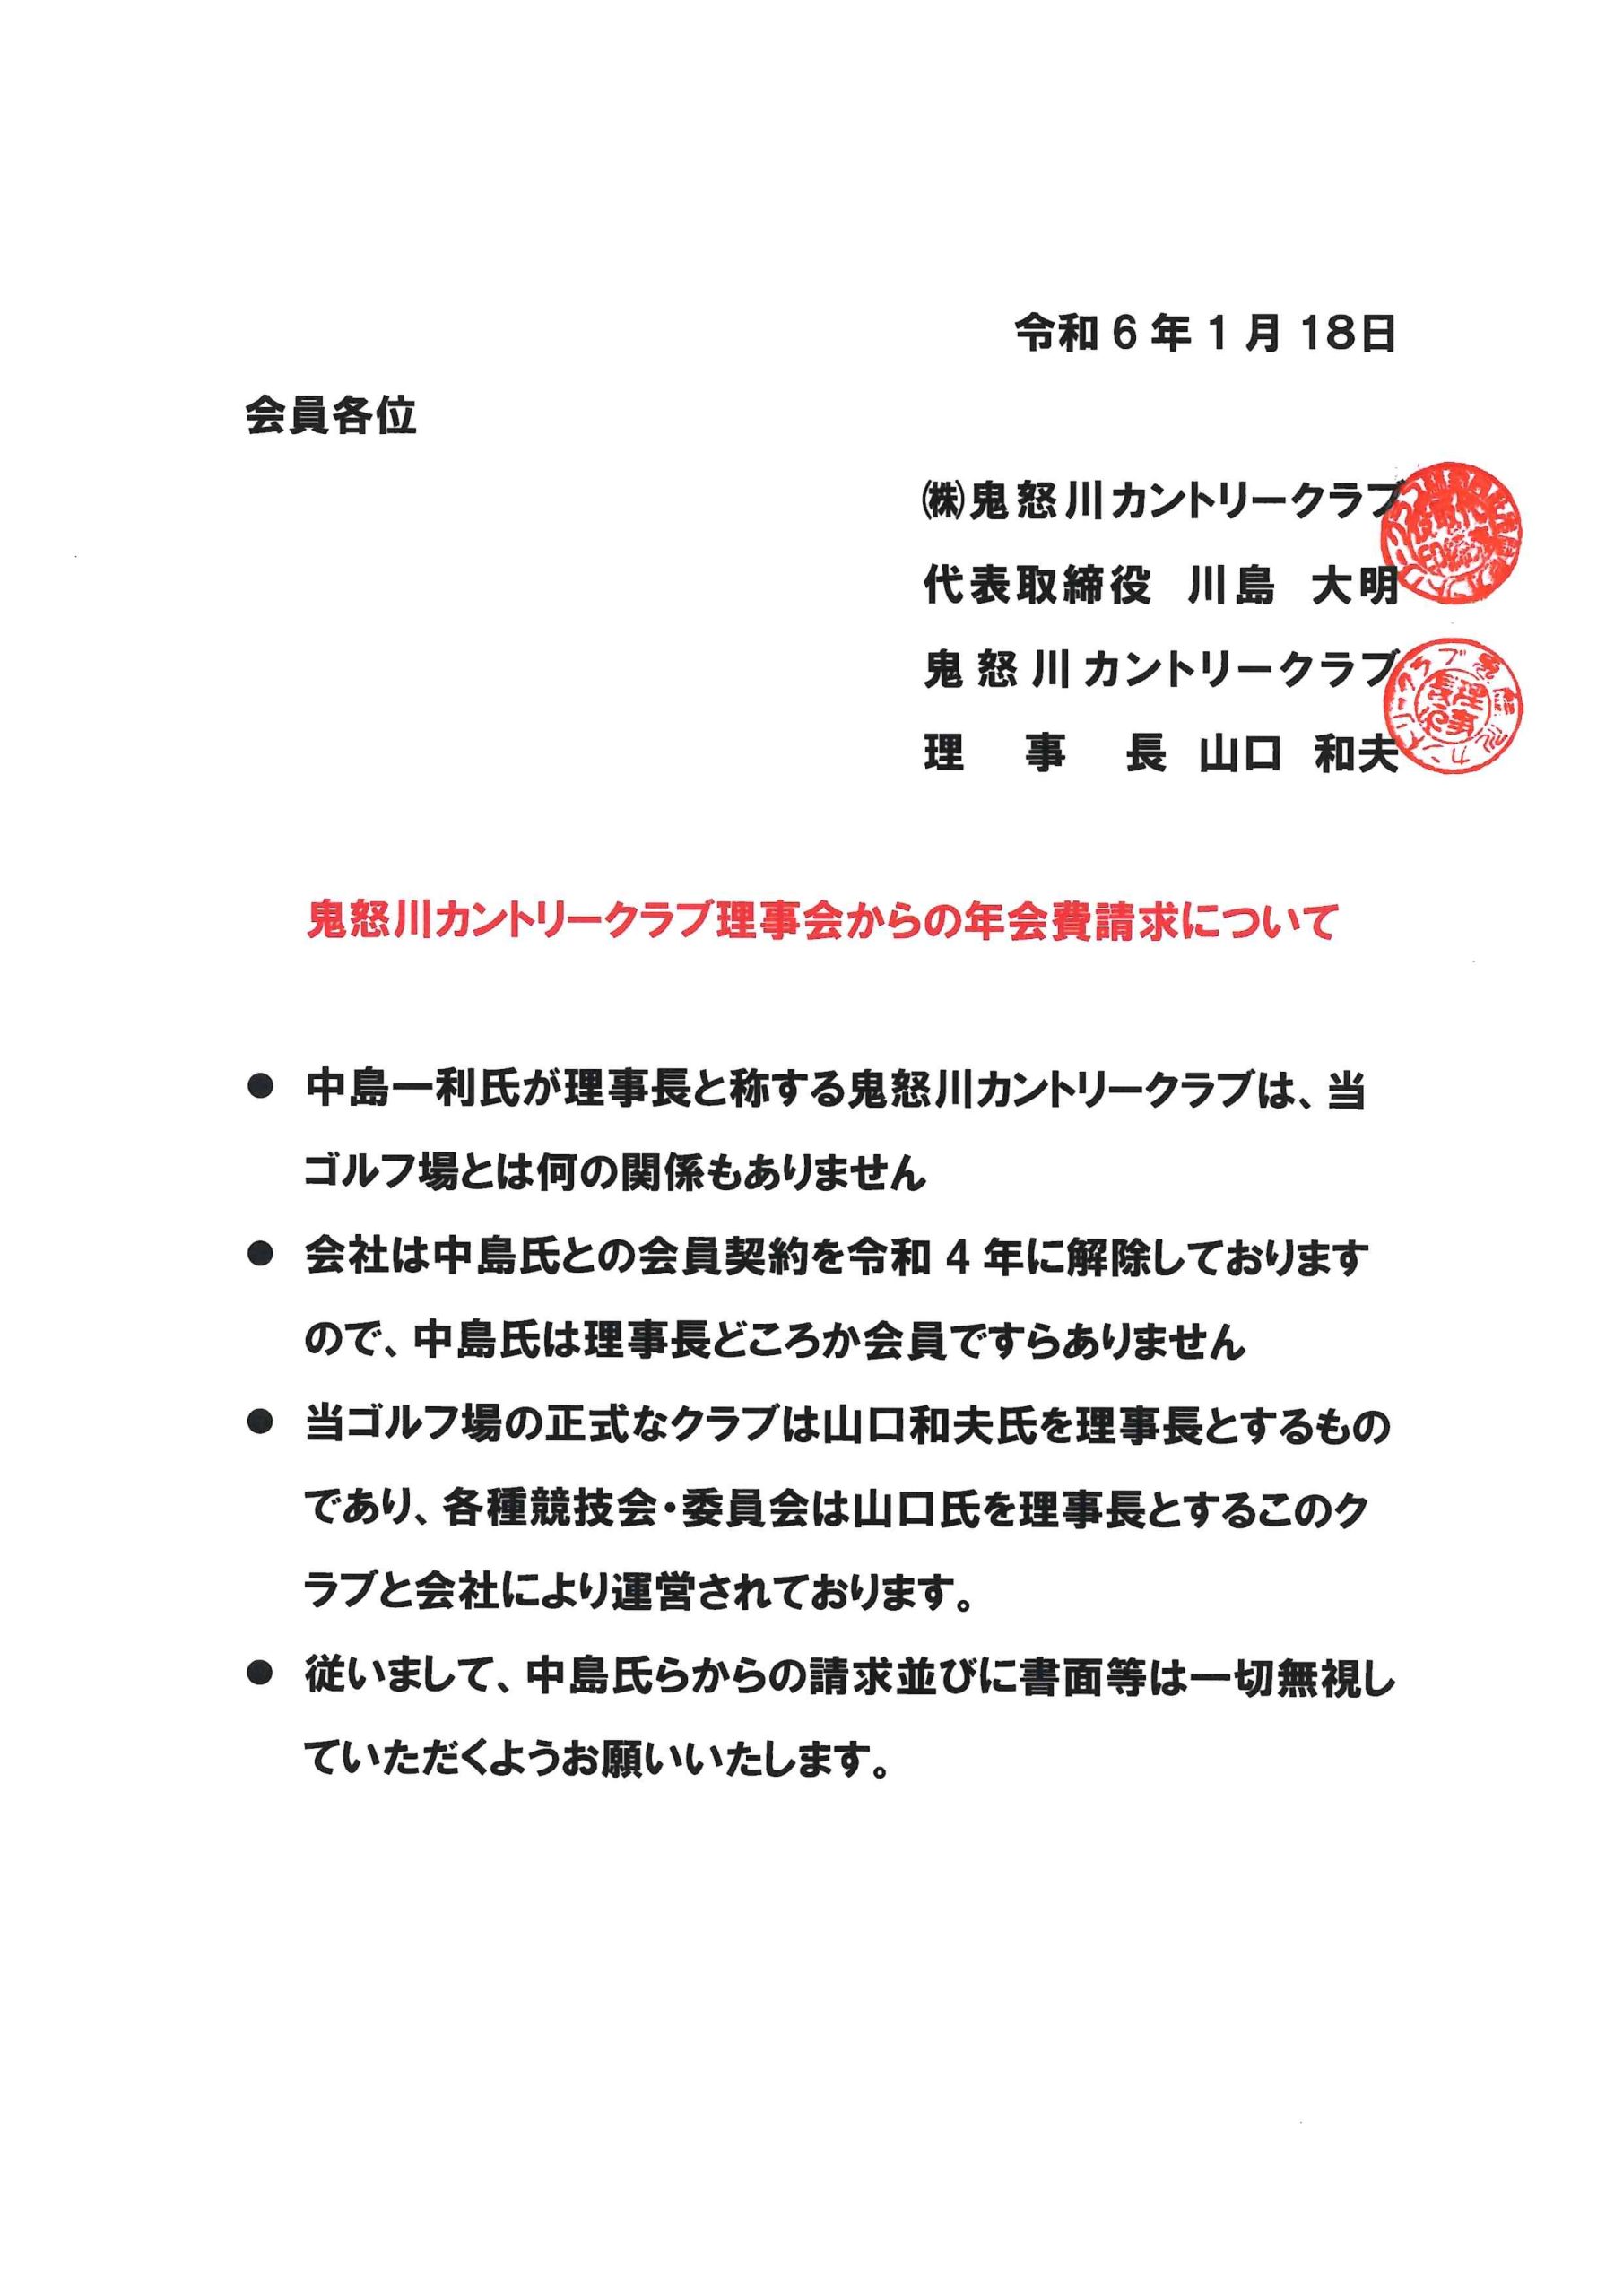 【重要】鬼怒川カントリークラブ理事会からの年会費請求について